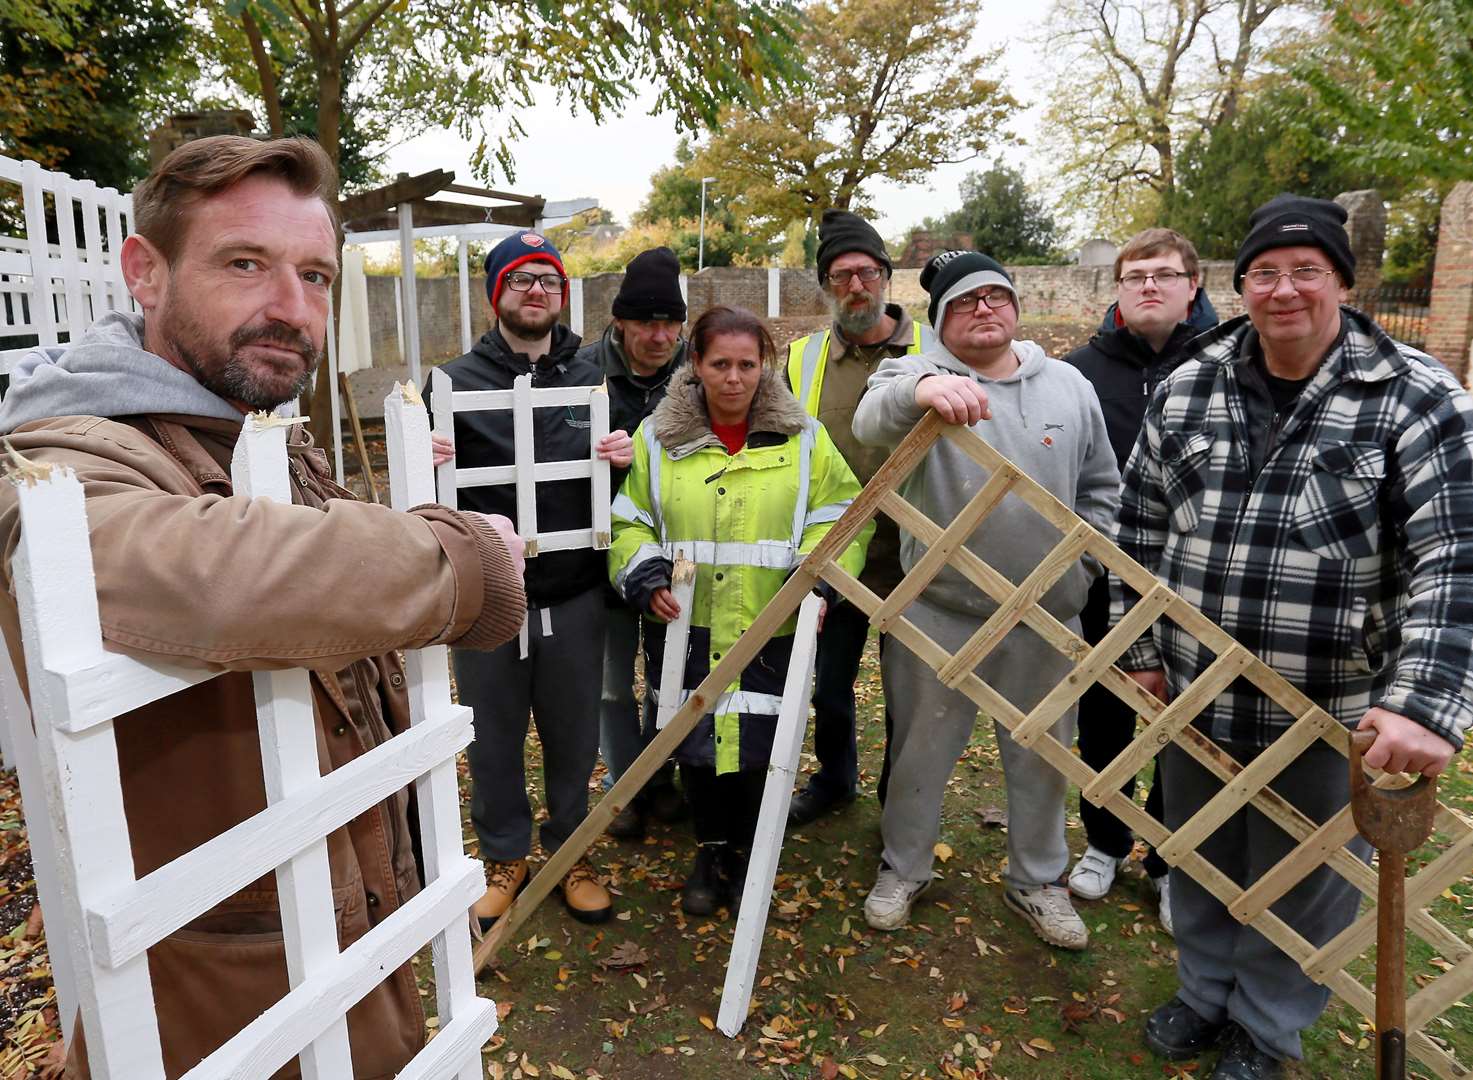 Vandals attack volunteers’ garden twice in a week